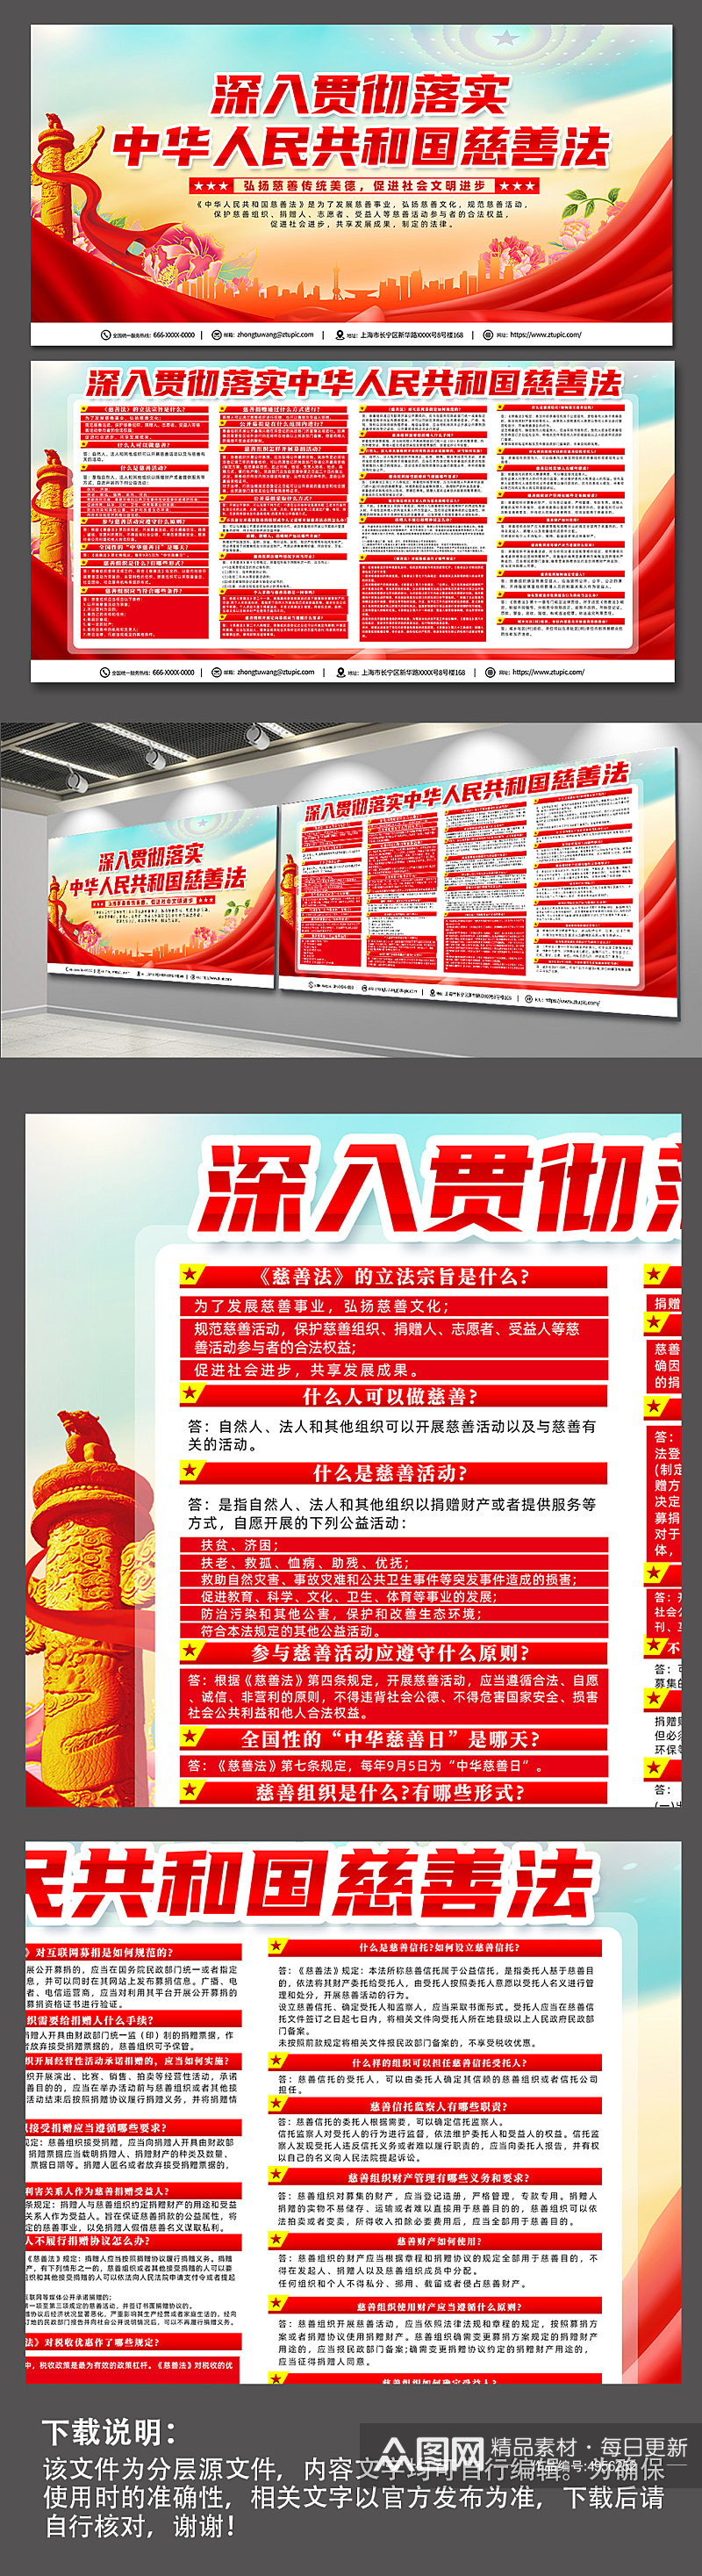 大气红色中华人民共和国慈善法科普展板素材